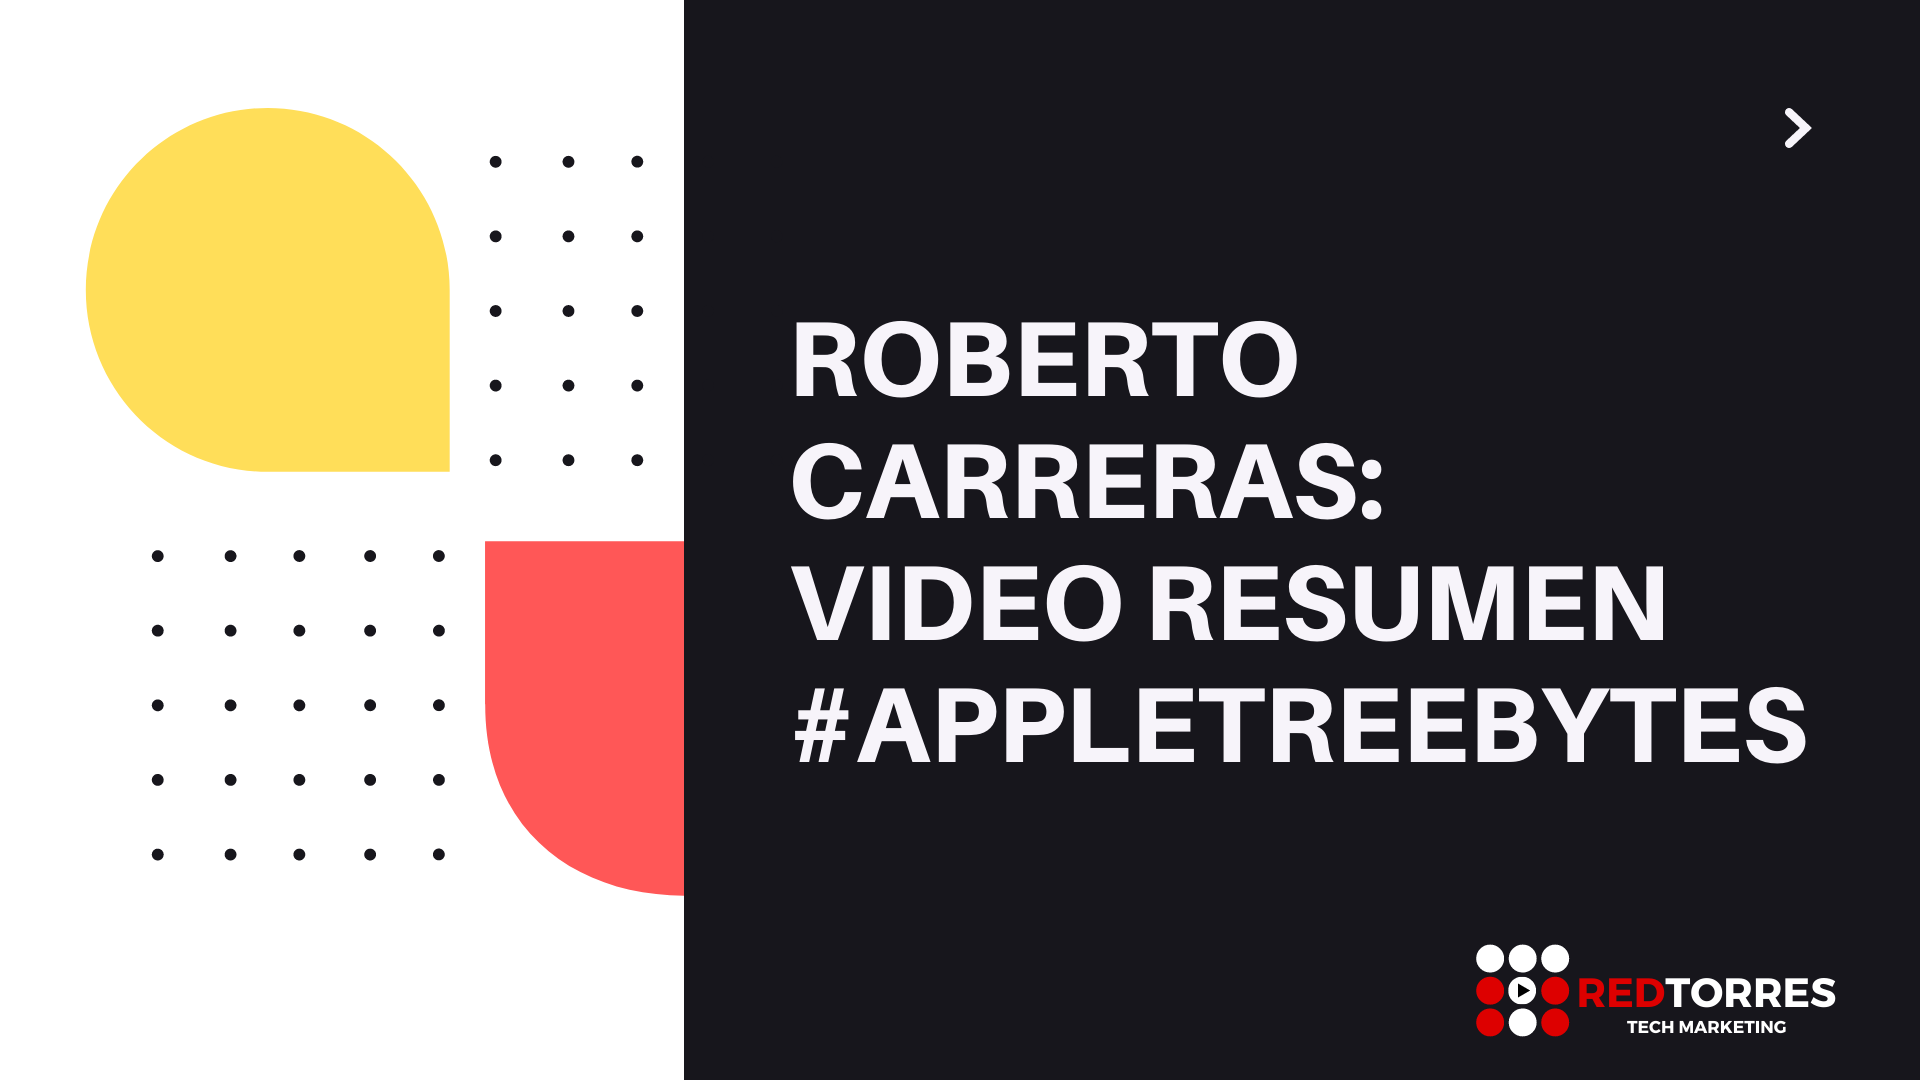 Roberto Carreras Video Resumen Appletreebytes | REDTORRES